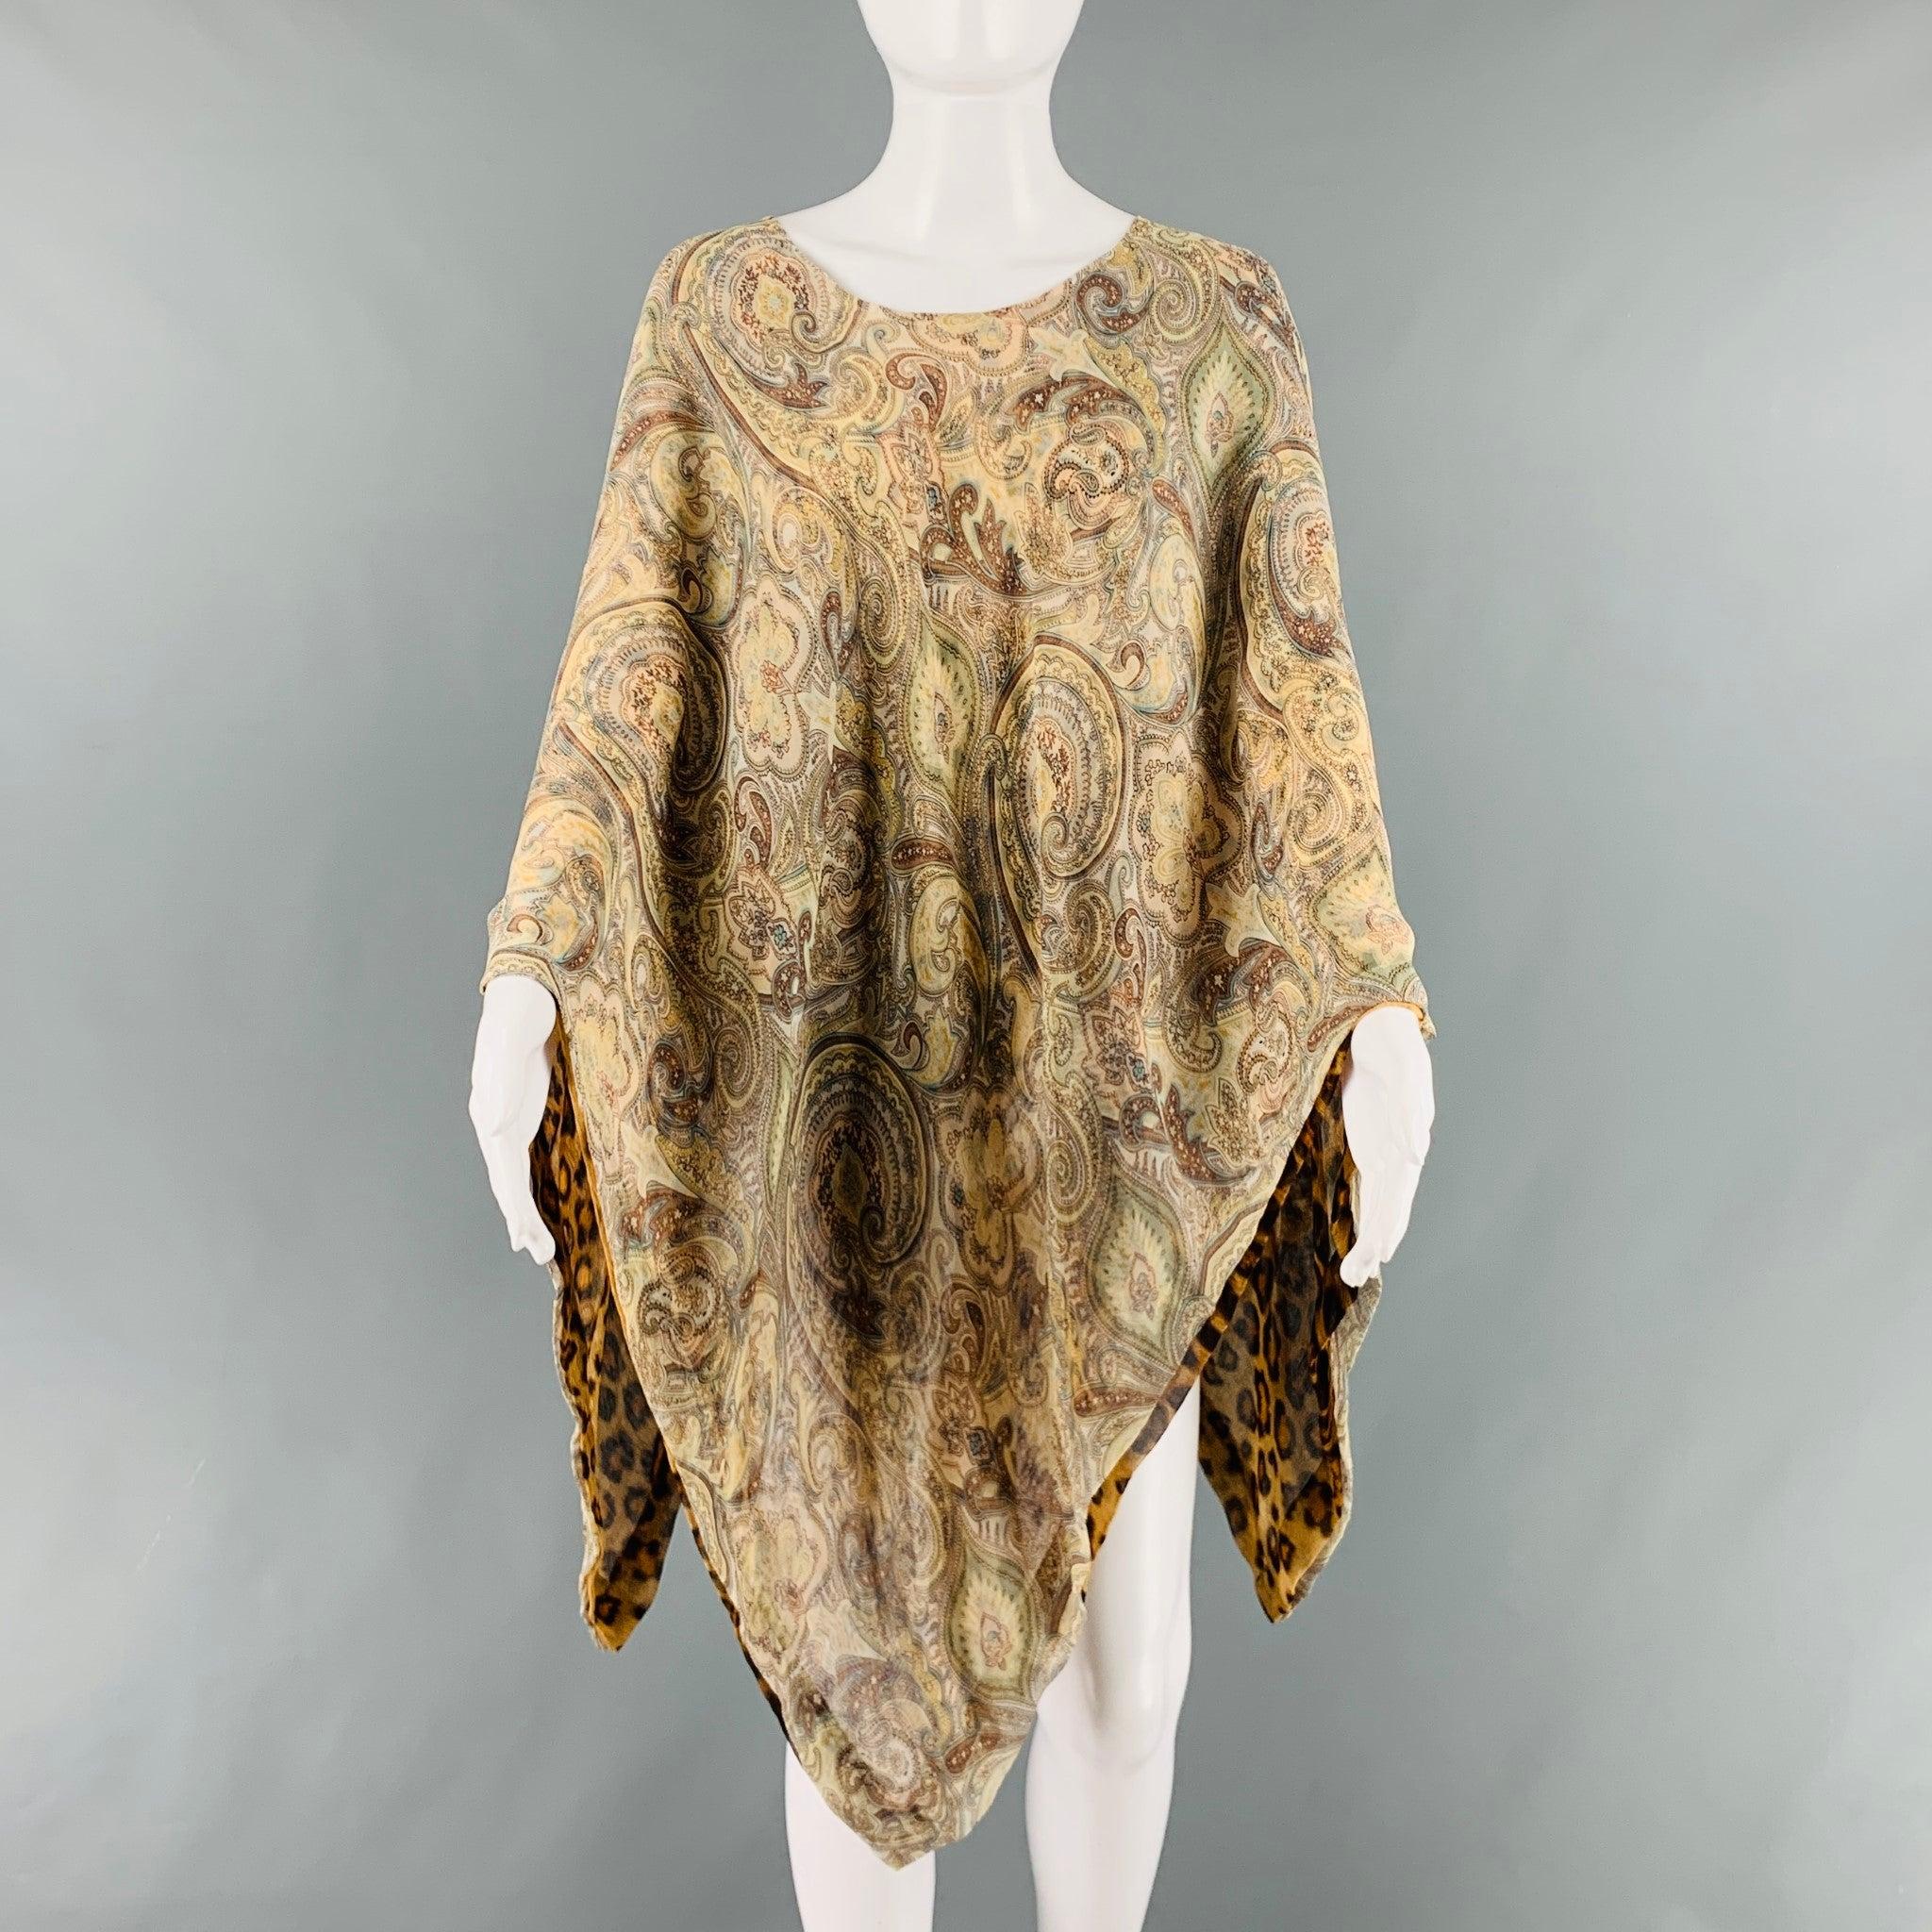 La robe ETRO est en soie tissée et se compose d'un poncho et d'une option réversible d'imprimé animalier et de cachemire. Pas d'étiquette. 

Marqué :   taille unique. 

Mesures : 
  Manches : 16 pouces Longueur : 29.5 pouces  
  
  
 
Numéro de